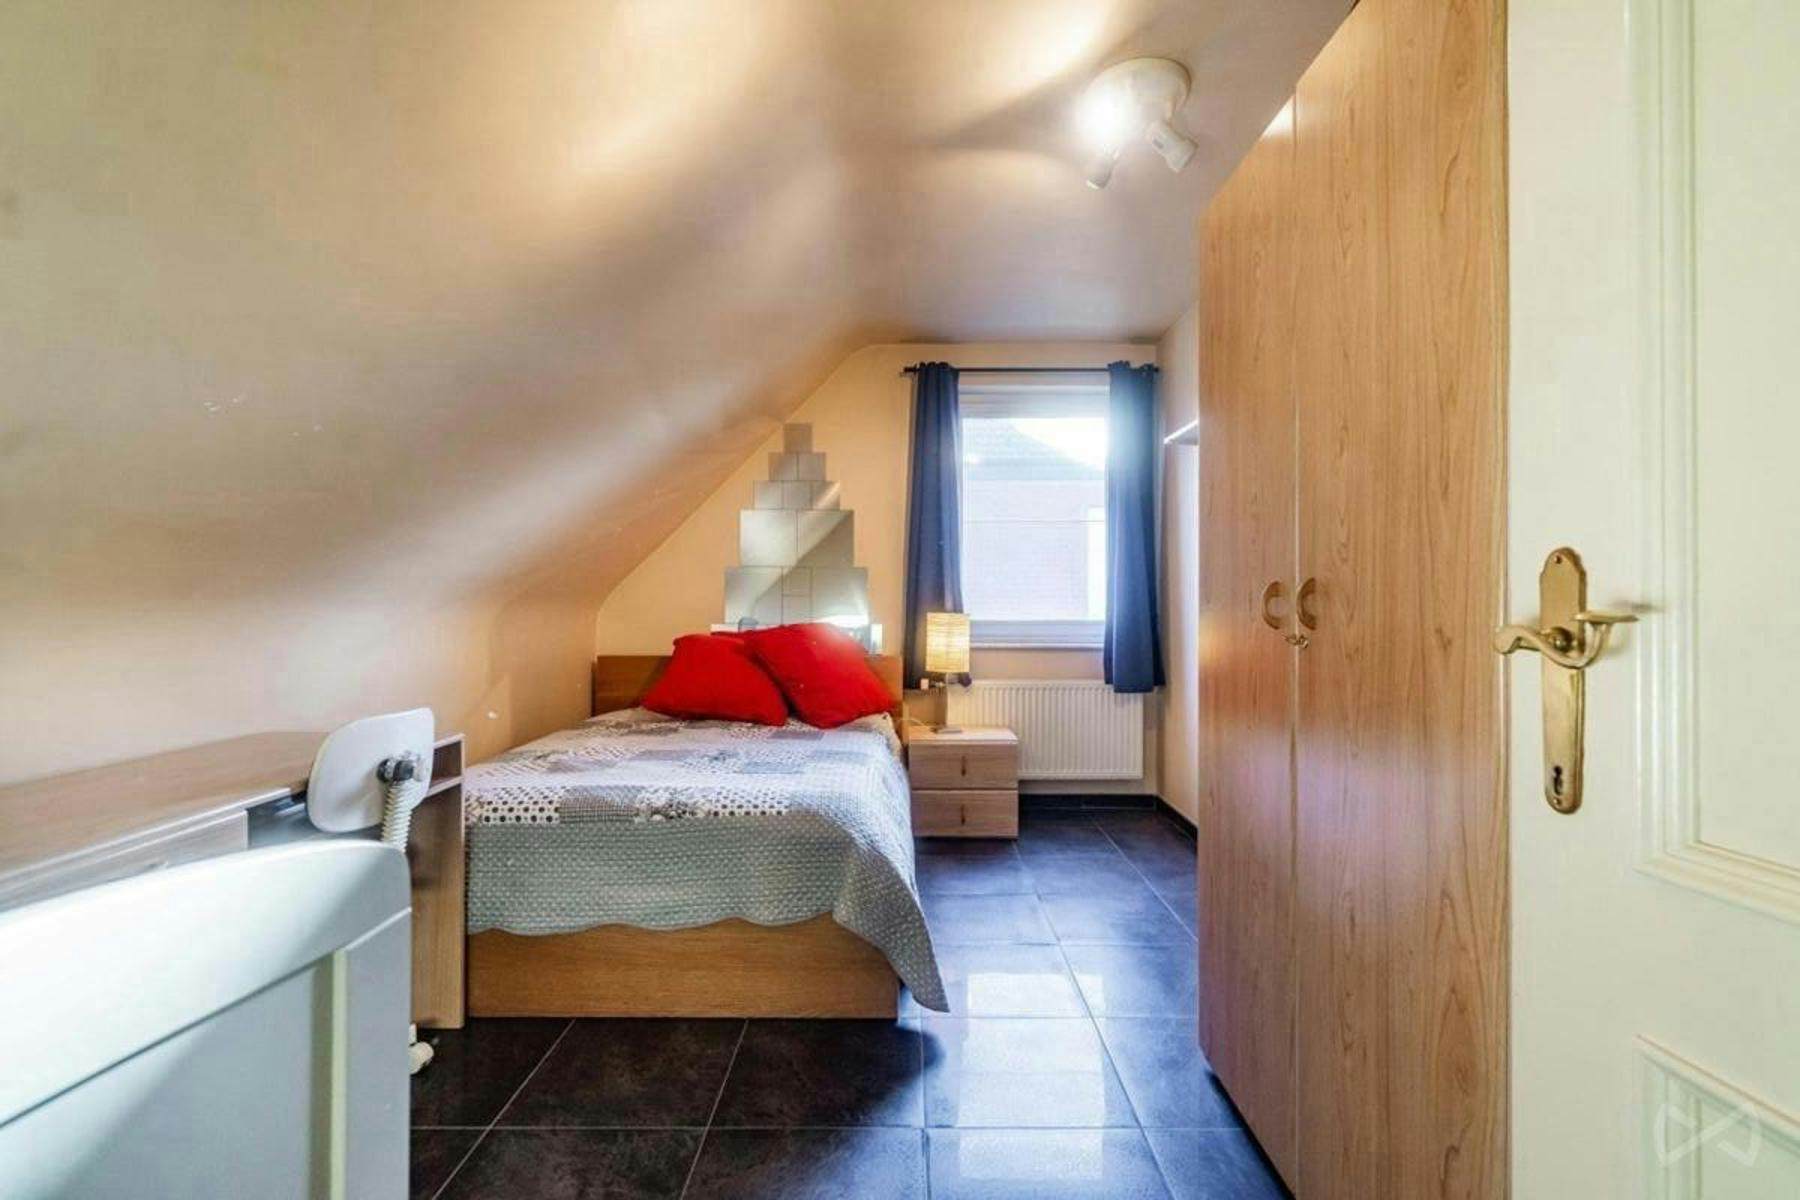 Foto 1 van 4 van Villa met vier slaapkamers in Grimbergen